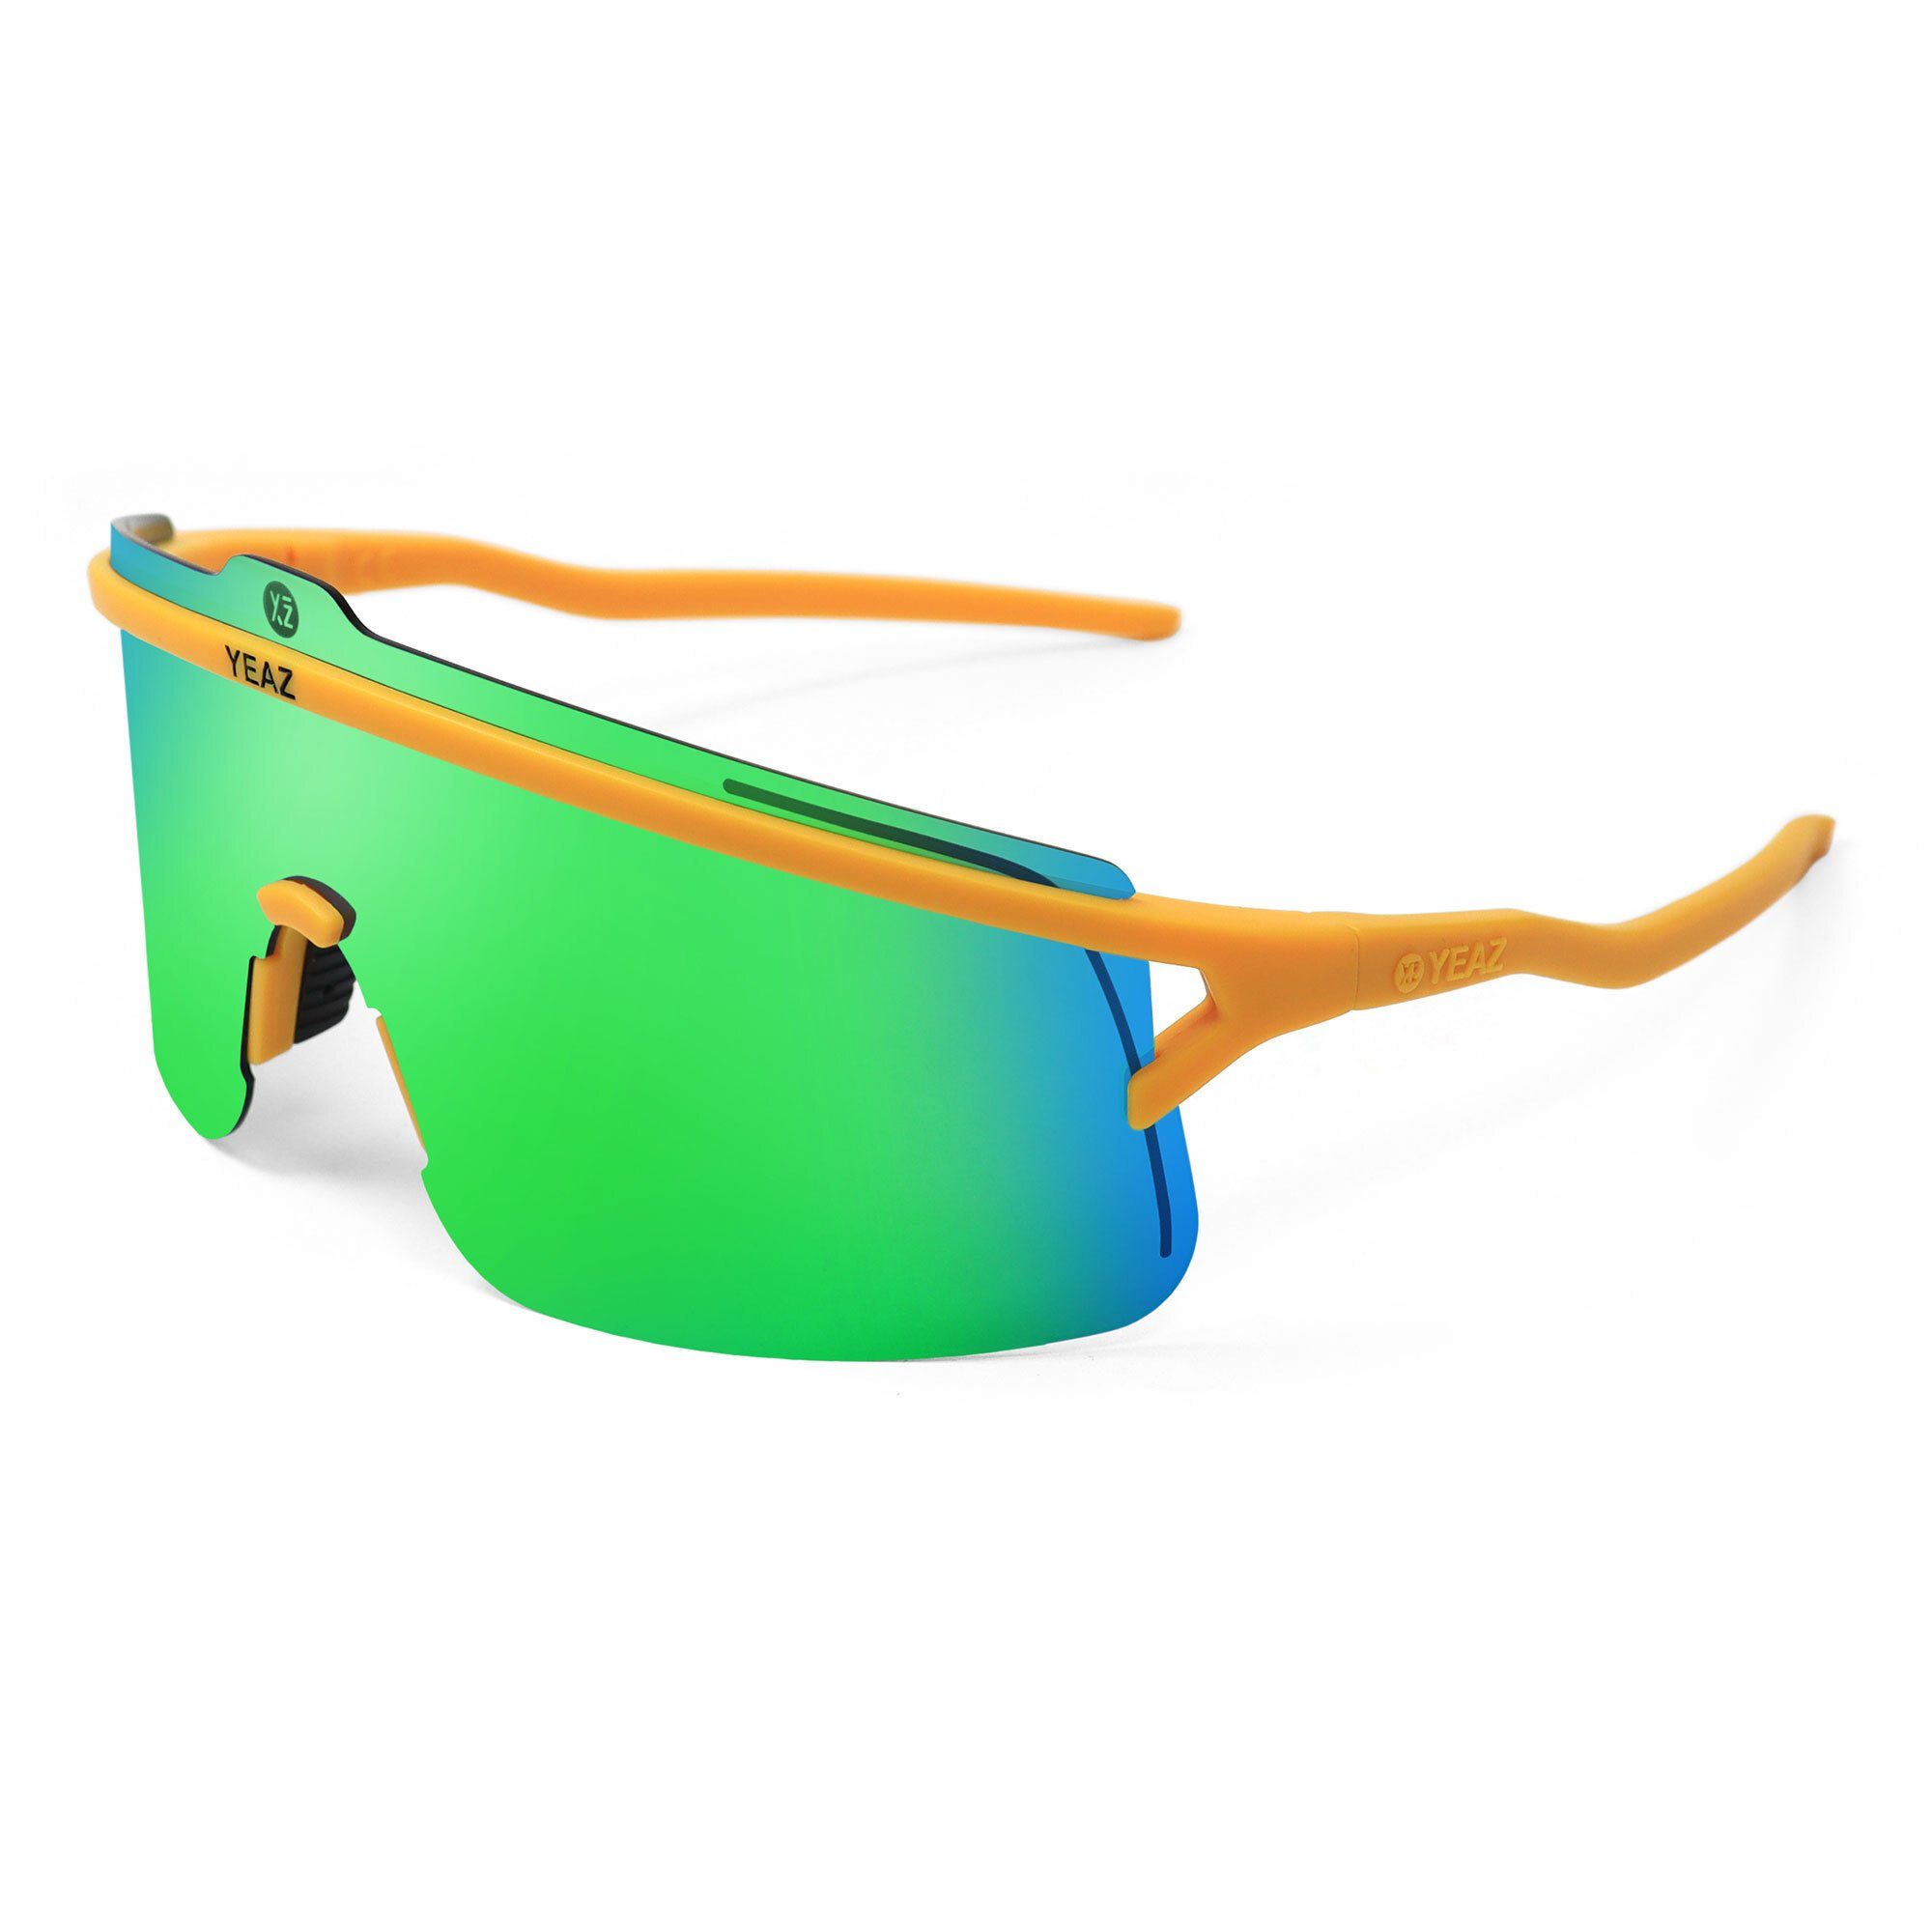 Sicht, perfekte black/silver, Style sport-sonnenbrille / Gelb SUNSHADE Komfort Grün Sportbrille YEAZ und Erlebe